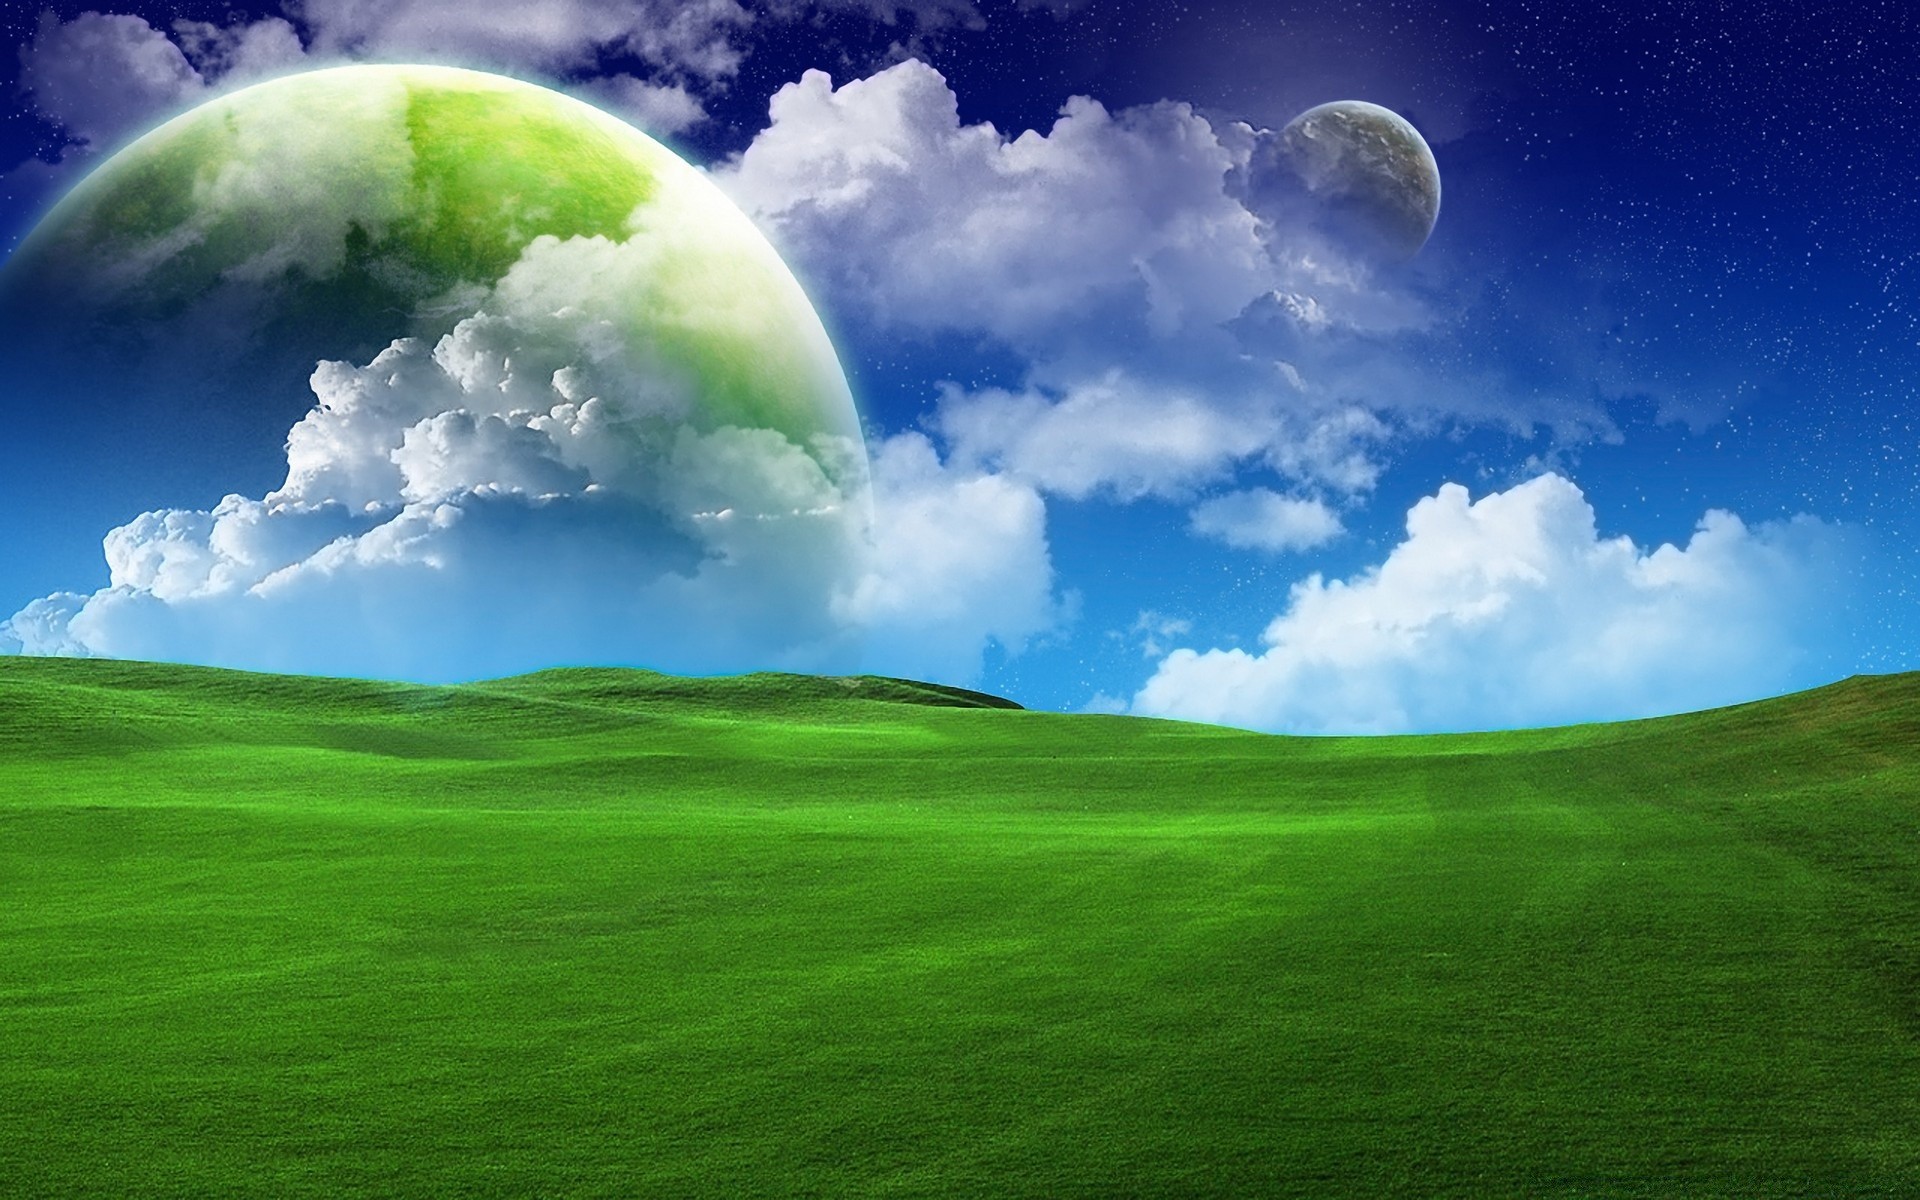 креатив трава небо природа сенокос шарообразные облако солнце пастбище хорошую погоду на открытом воздухе газон поле среды экология лето пейзаж